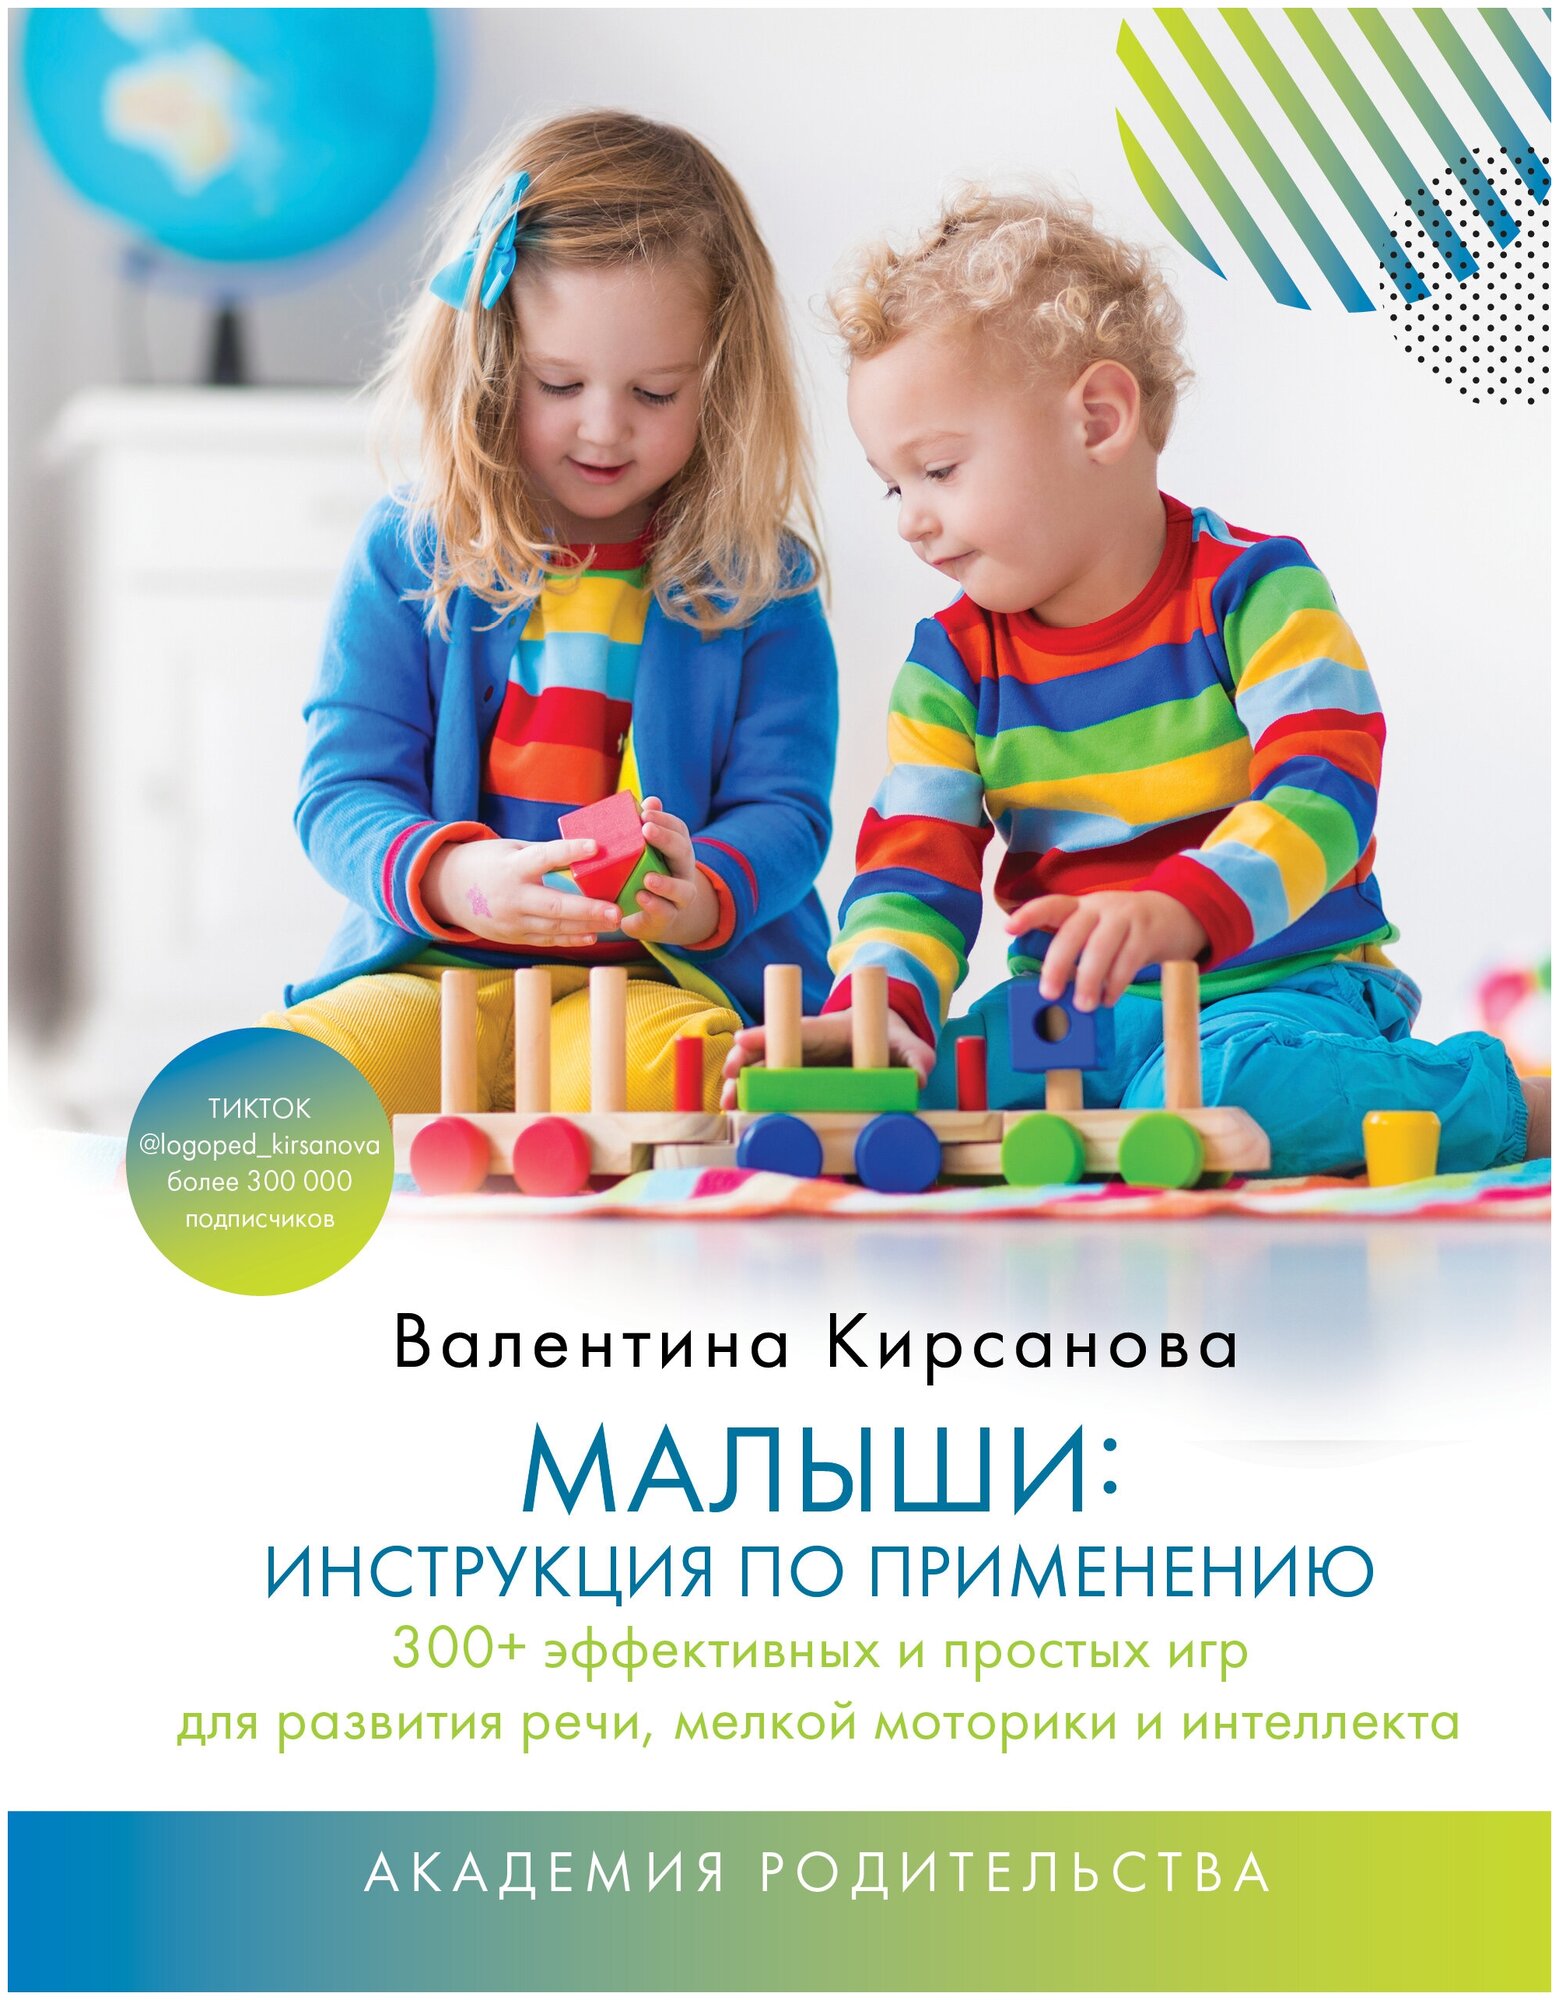 Малыши: инструкция по применению. 300+ эффективных и простых игр для развития речи, мелкой моторики и интеллекта Кирсанова Валентина